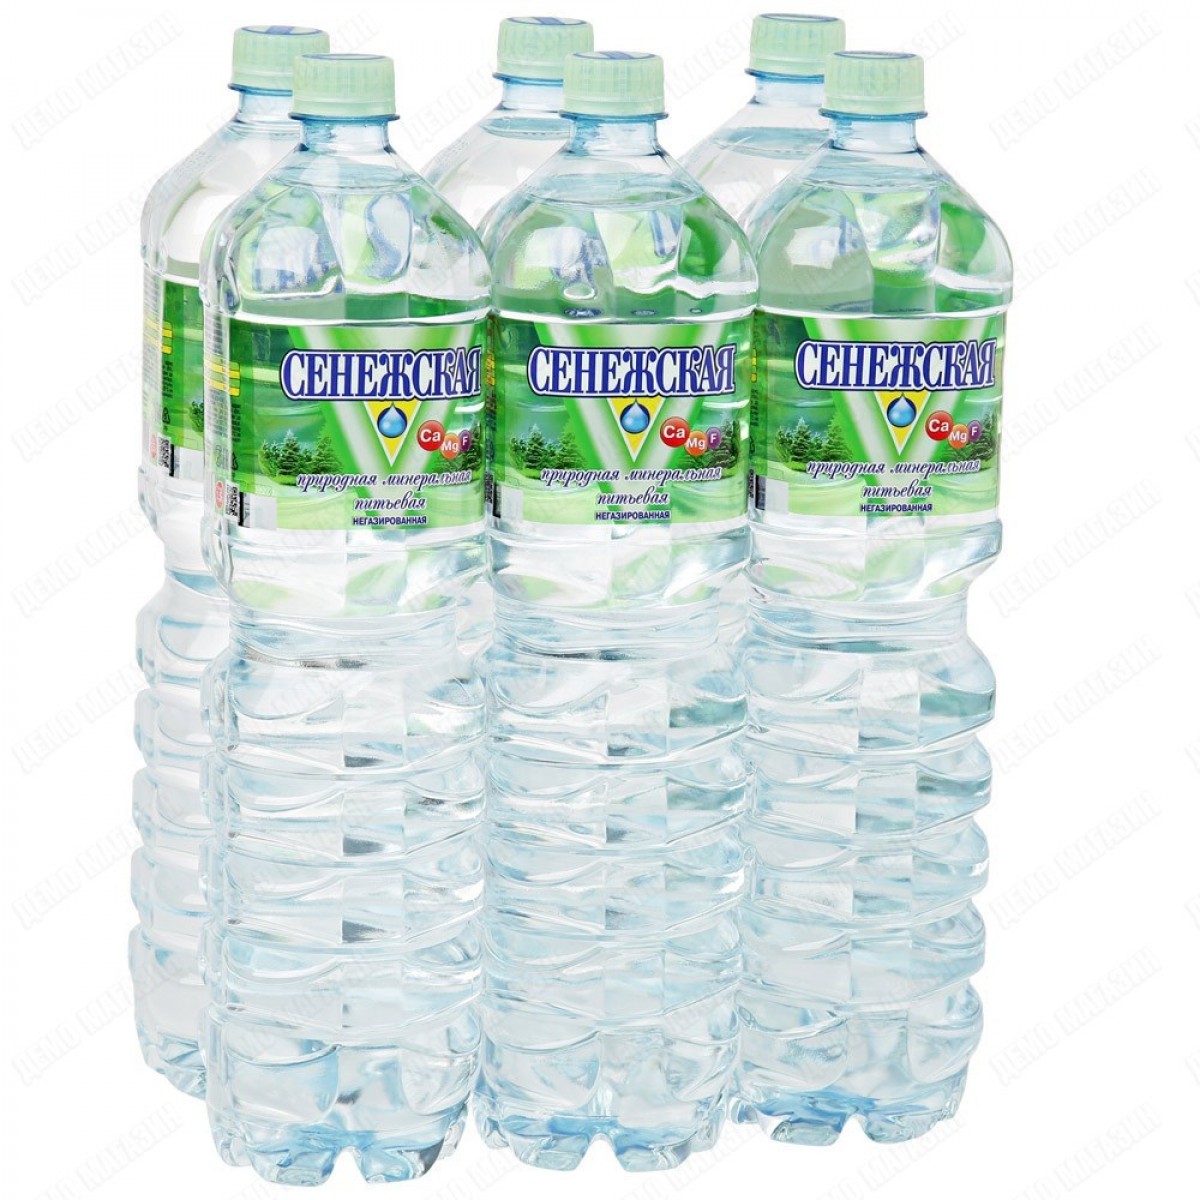 Вода 1.5 литра негазированная. Сенежская вода 1.5л. Сенежская вода 1,5 ГАЗ. Сенежская вода 1.5. Сенежская негазированная 1.5.